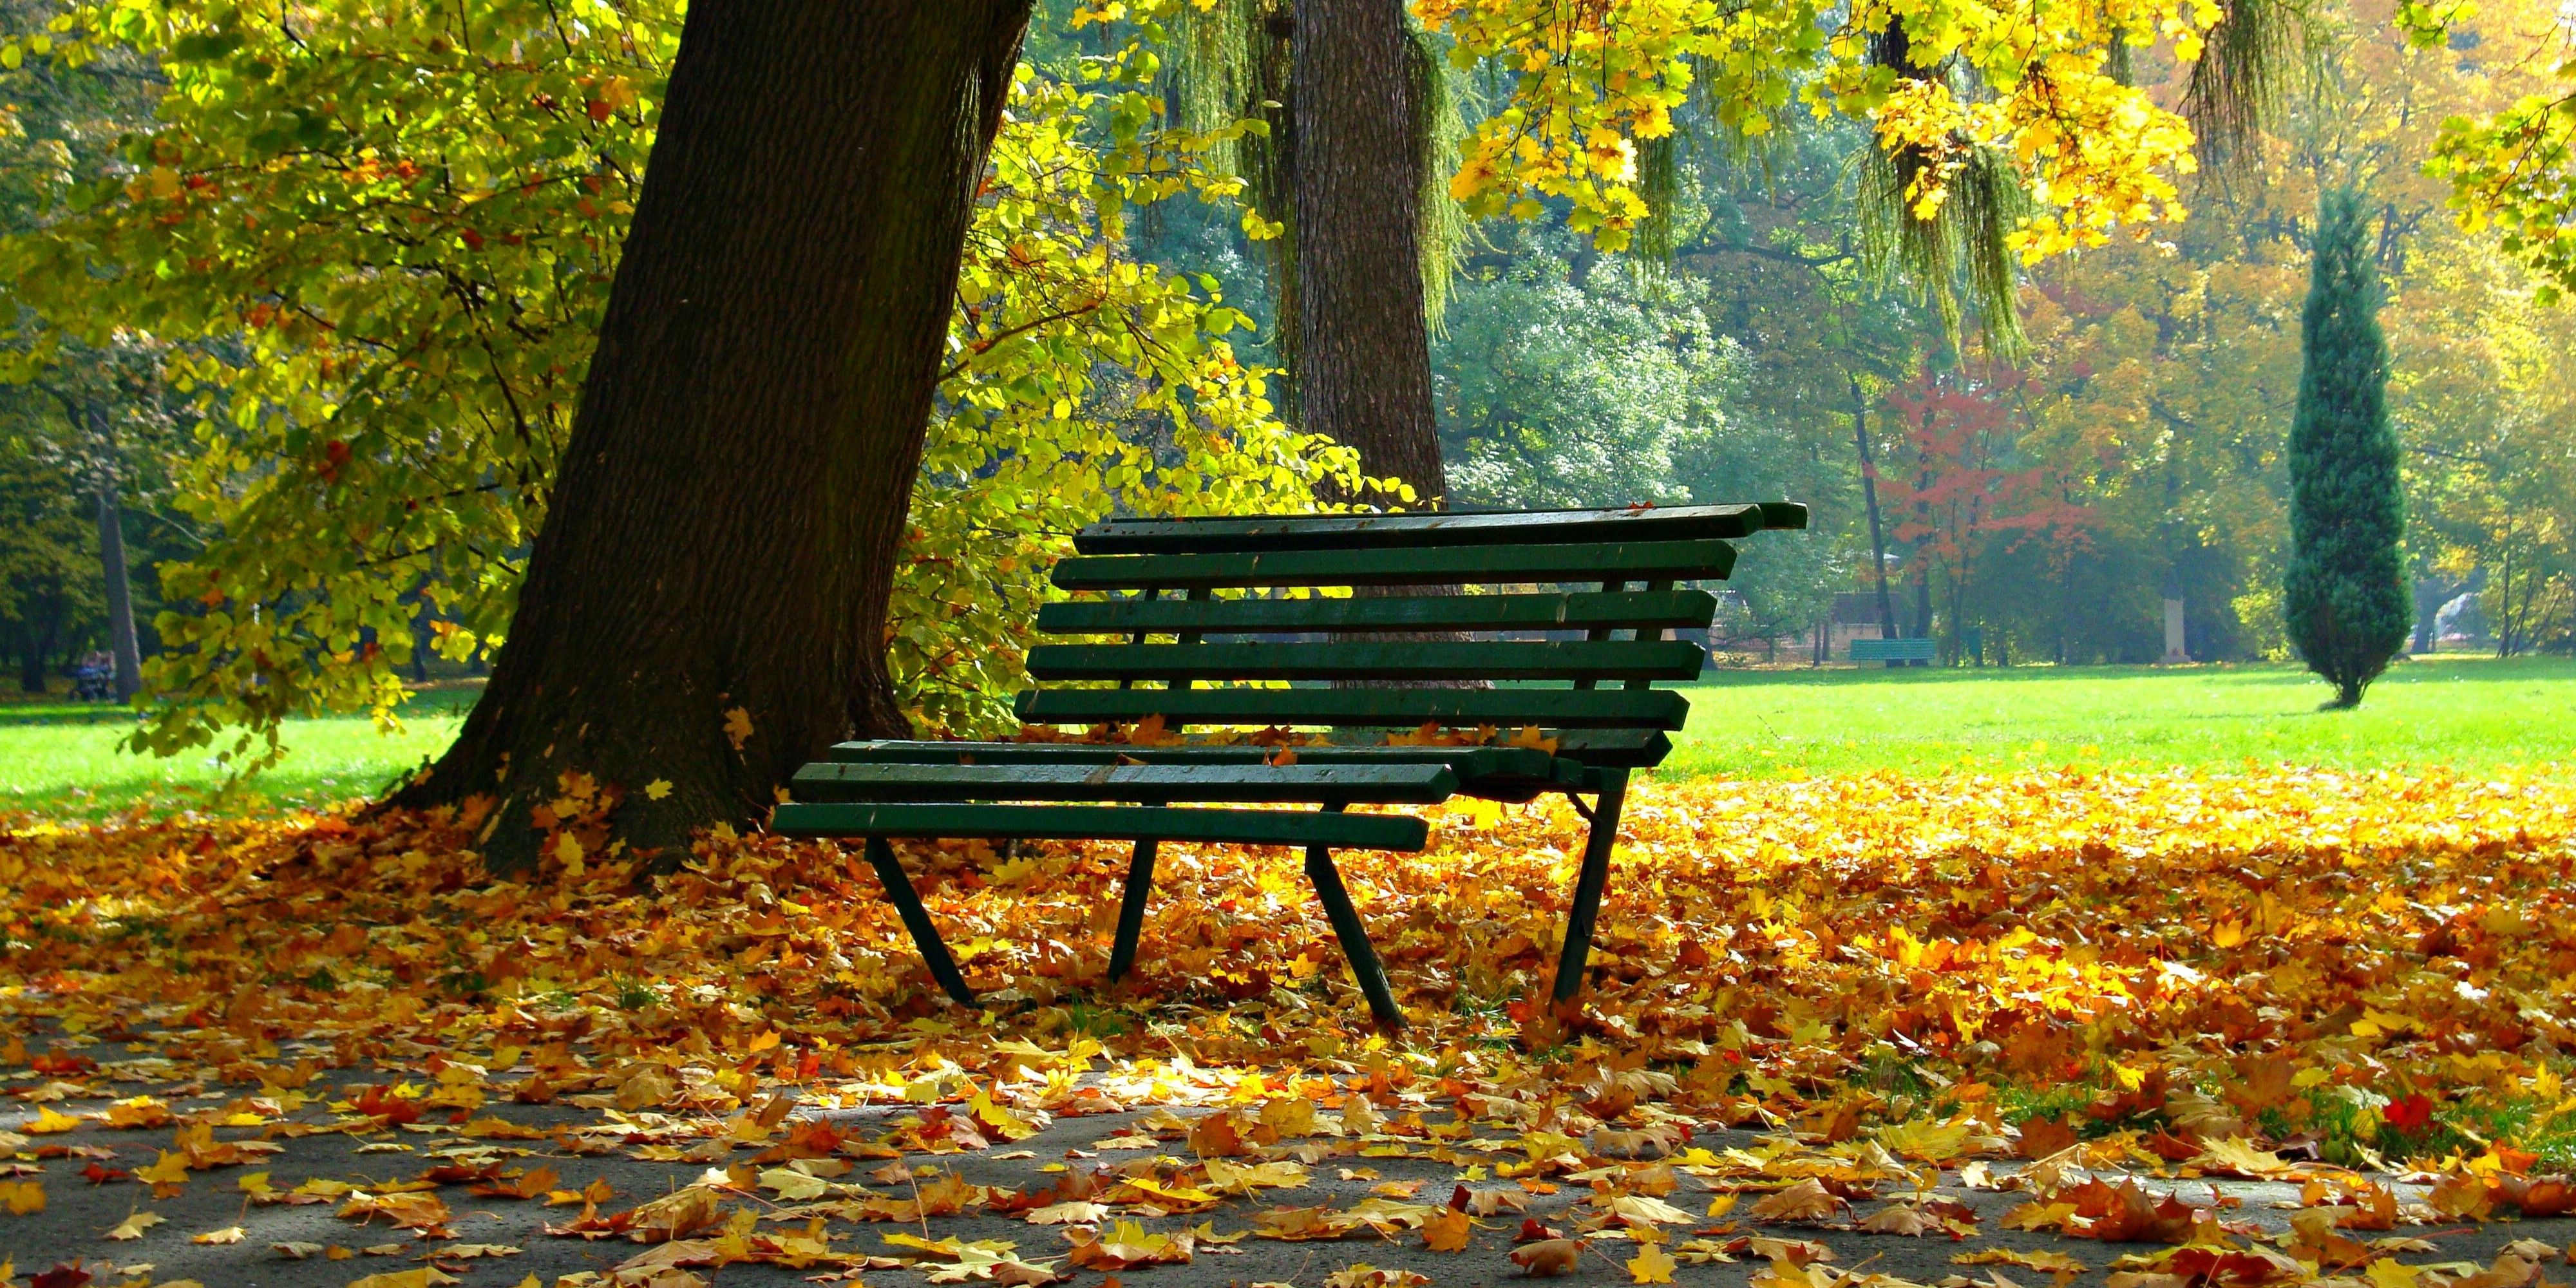 Uma imagem de um banco de parque no outono com uma pilha de folhas mortas embaixo dele